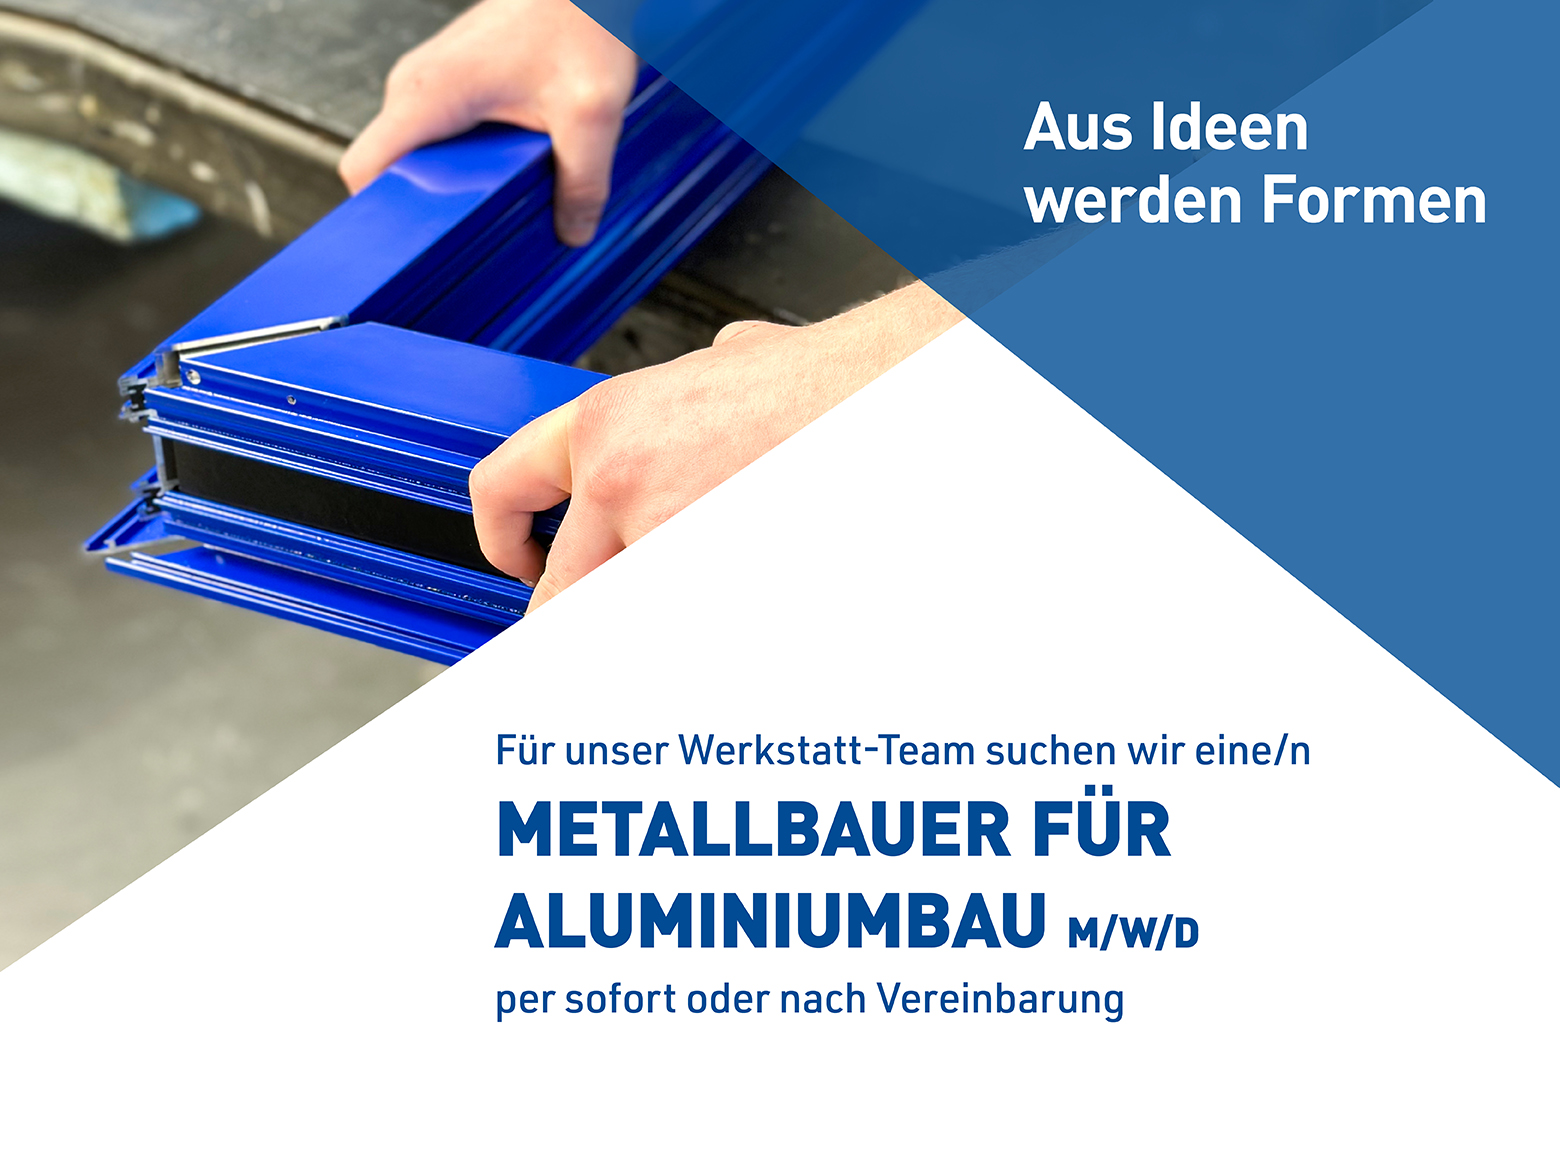 Metallbauer für Aluminiumbau m/w/d gesucht